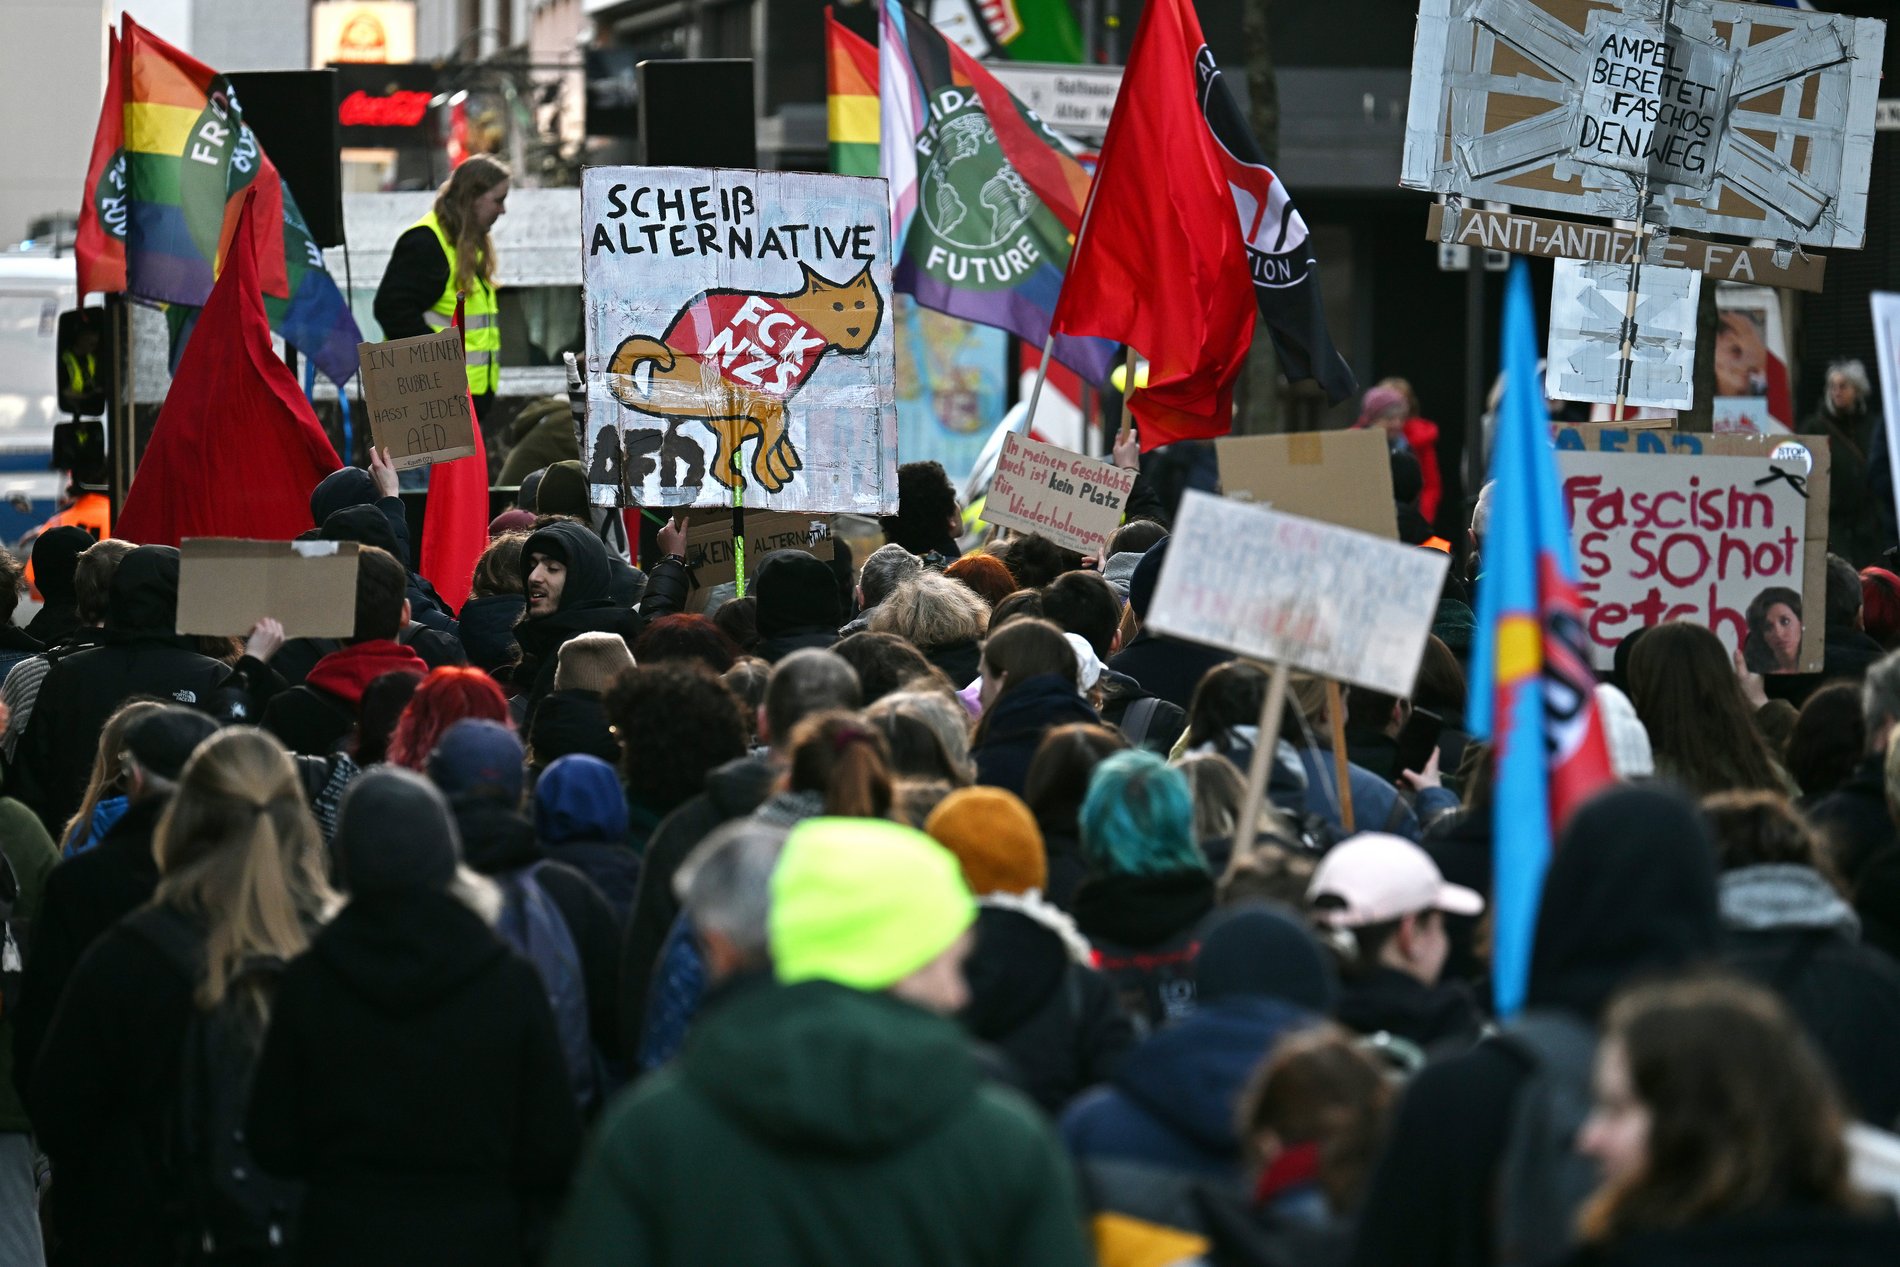 Zahlreiche Menschen mit Plakaten und Fahnen bei einer Demonstration gegen die AfD und Rechtsextremismus